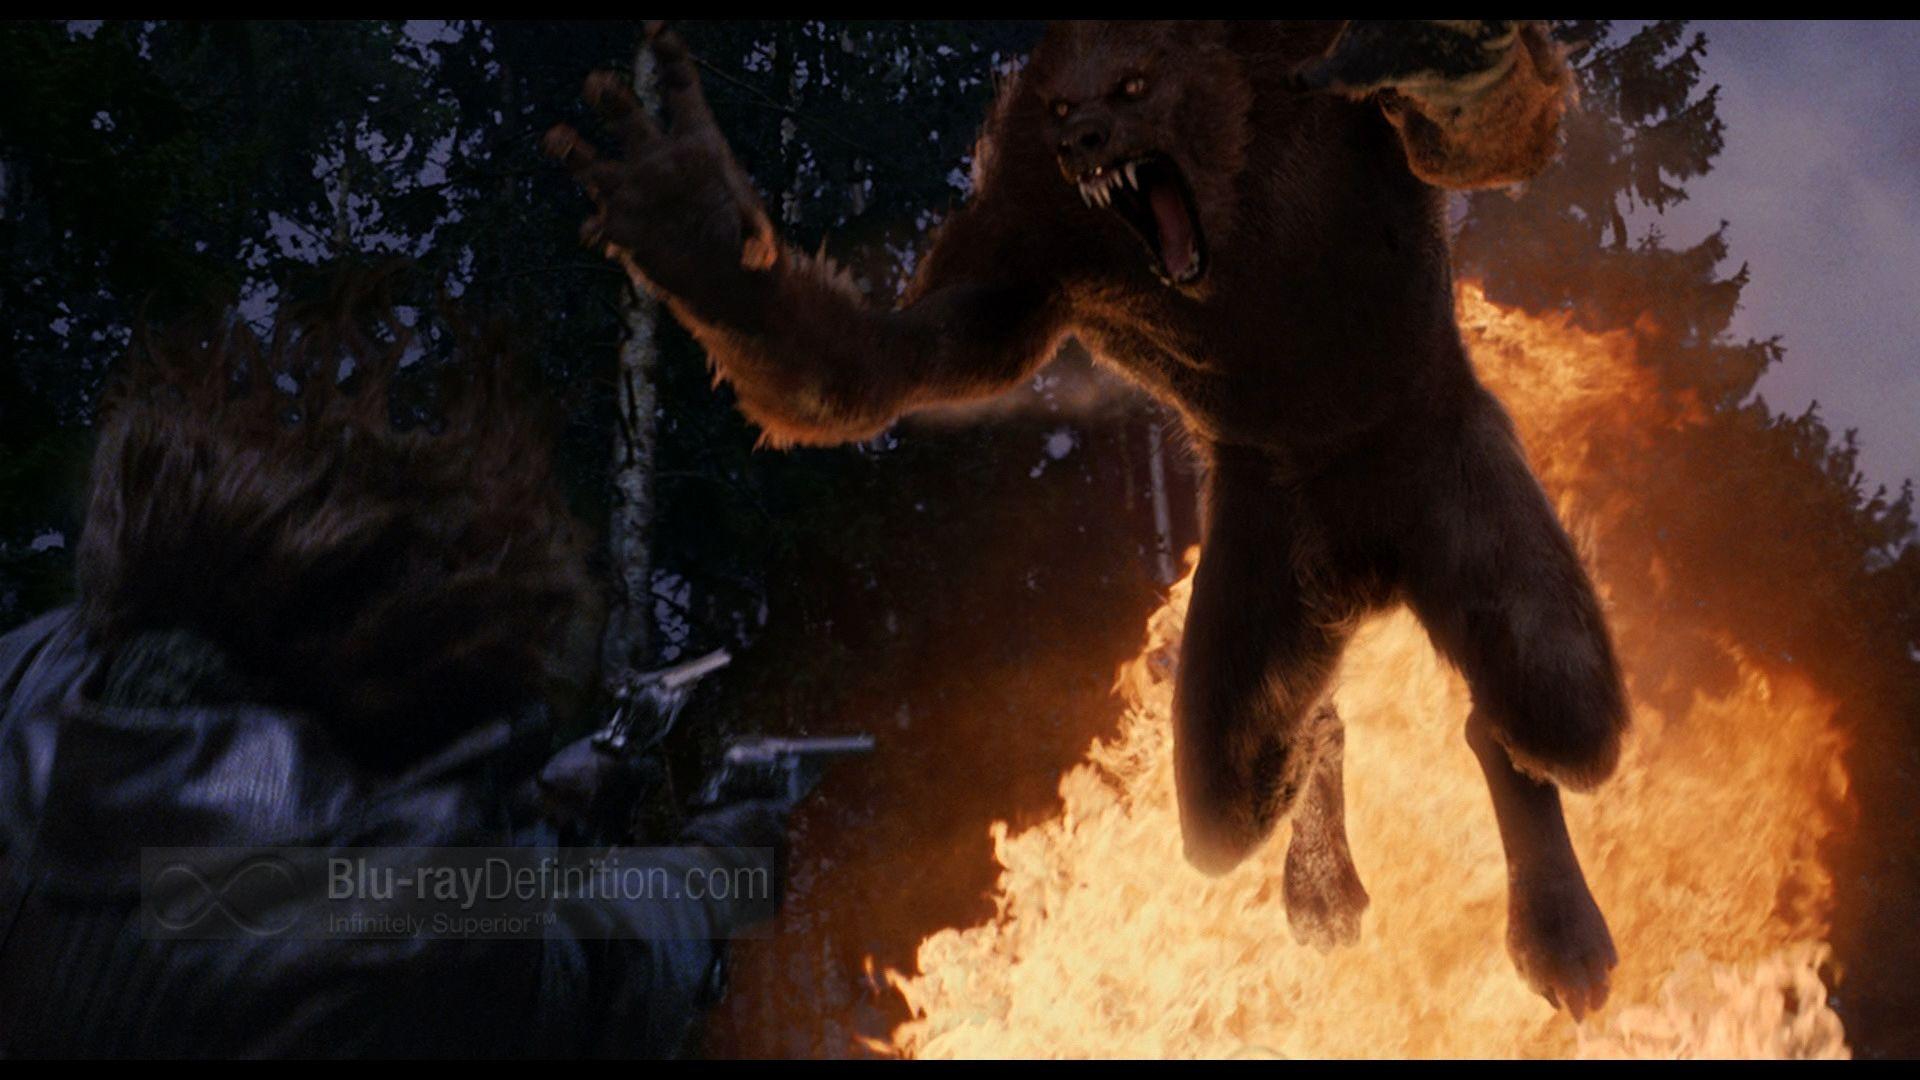 Van Helsing Werewolf Image Earthly Wallpaper 1080p